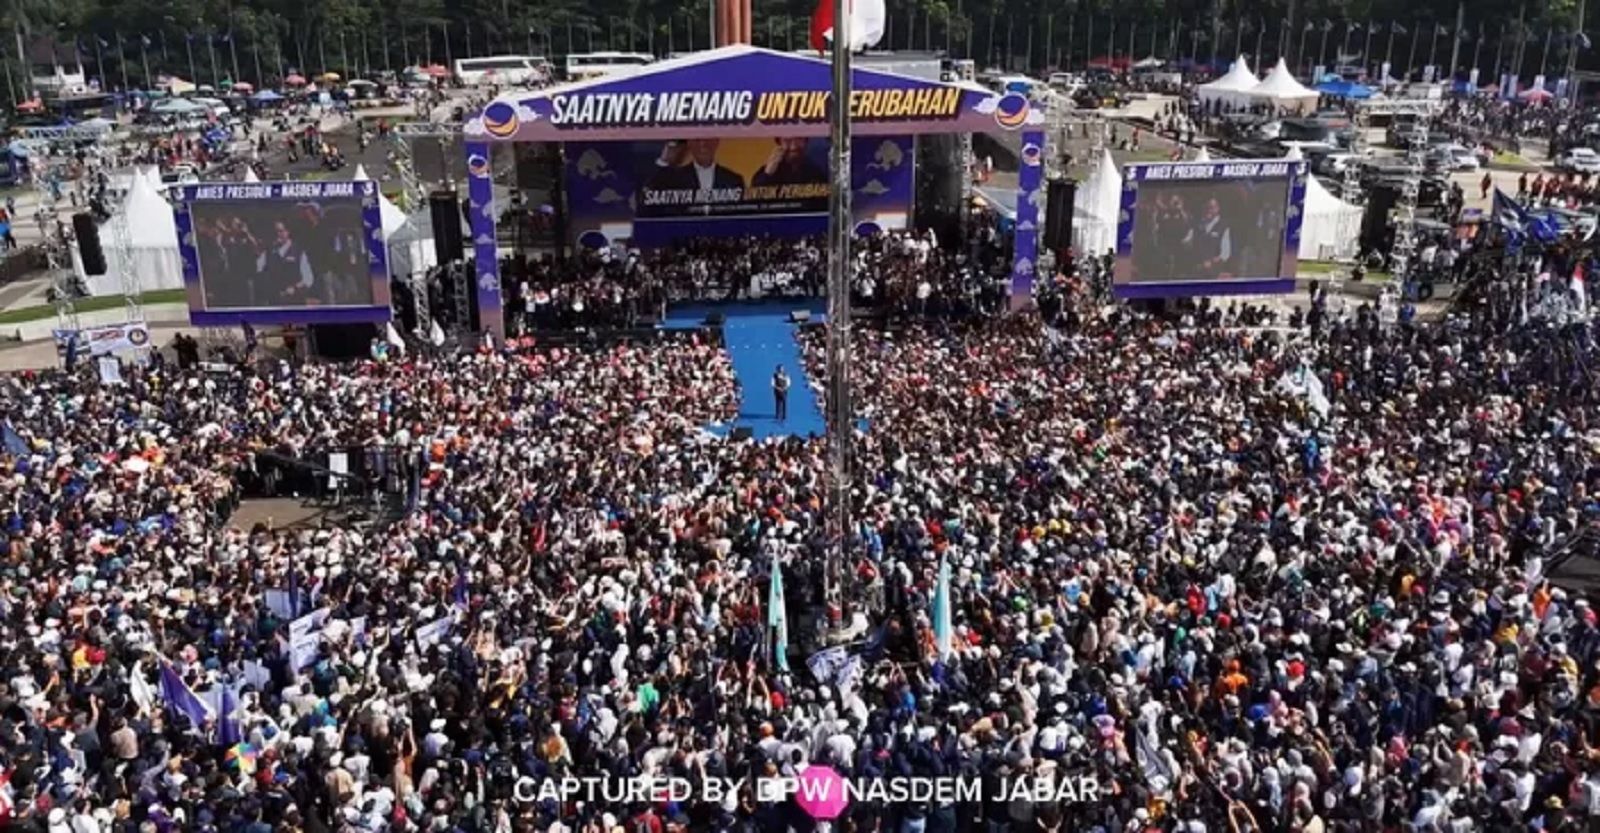 Kampanye Anies Baswedan di Tegallega Bandung Dipadati Lautan Manusia : Adil, Makmur untuk Semua!